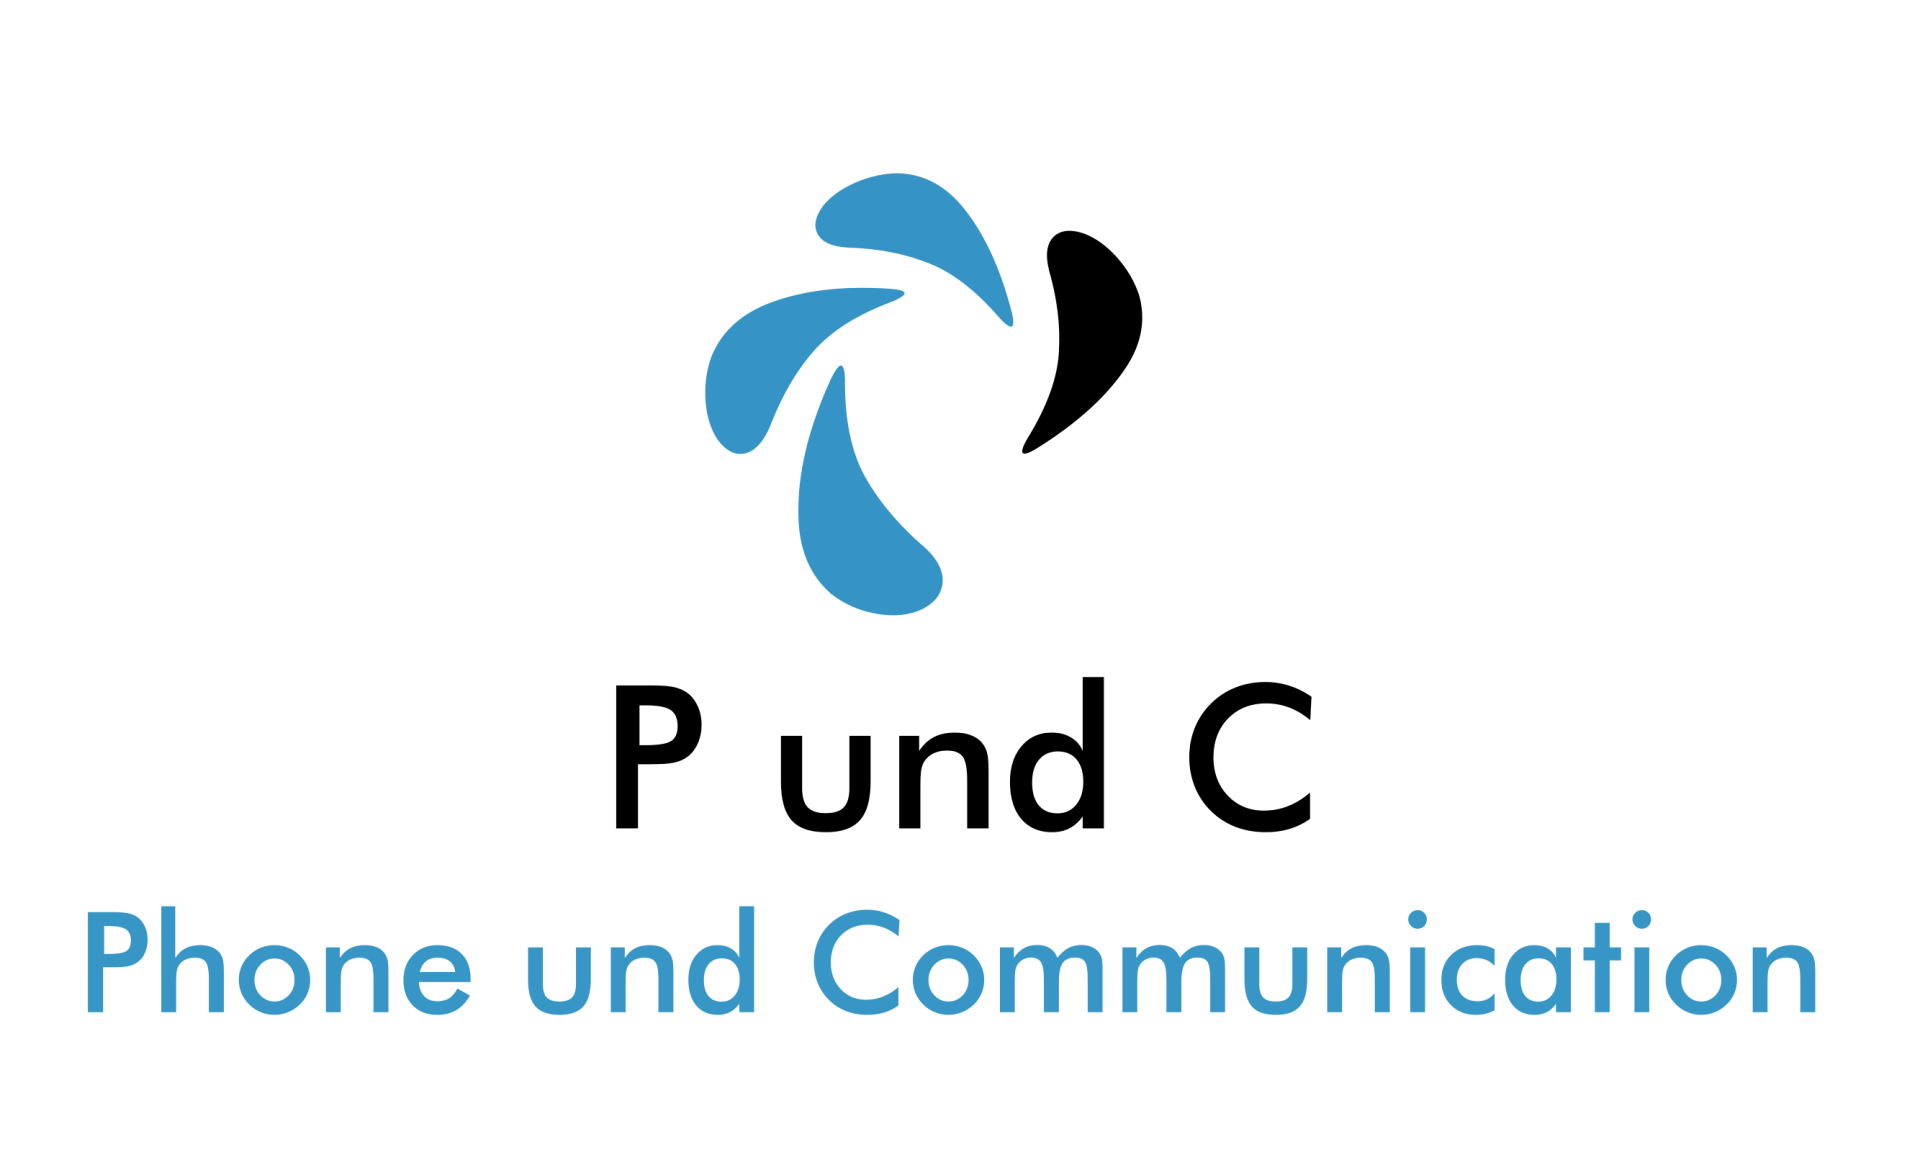 PundC_Phone_und_Communication_Logo